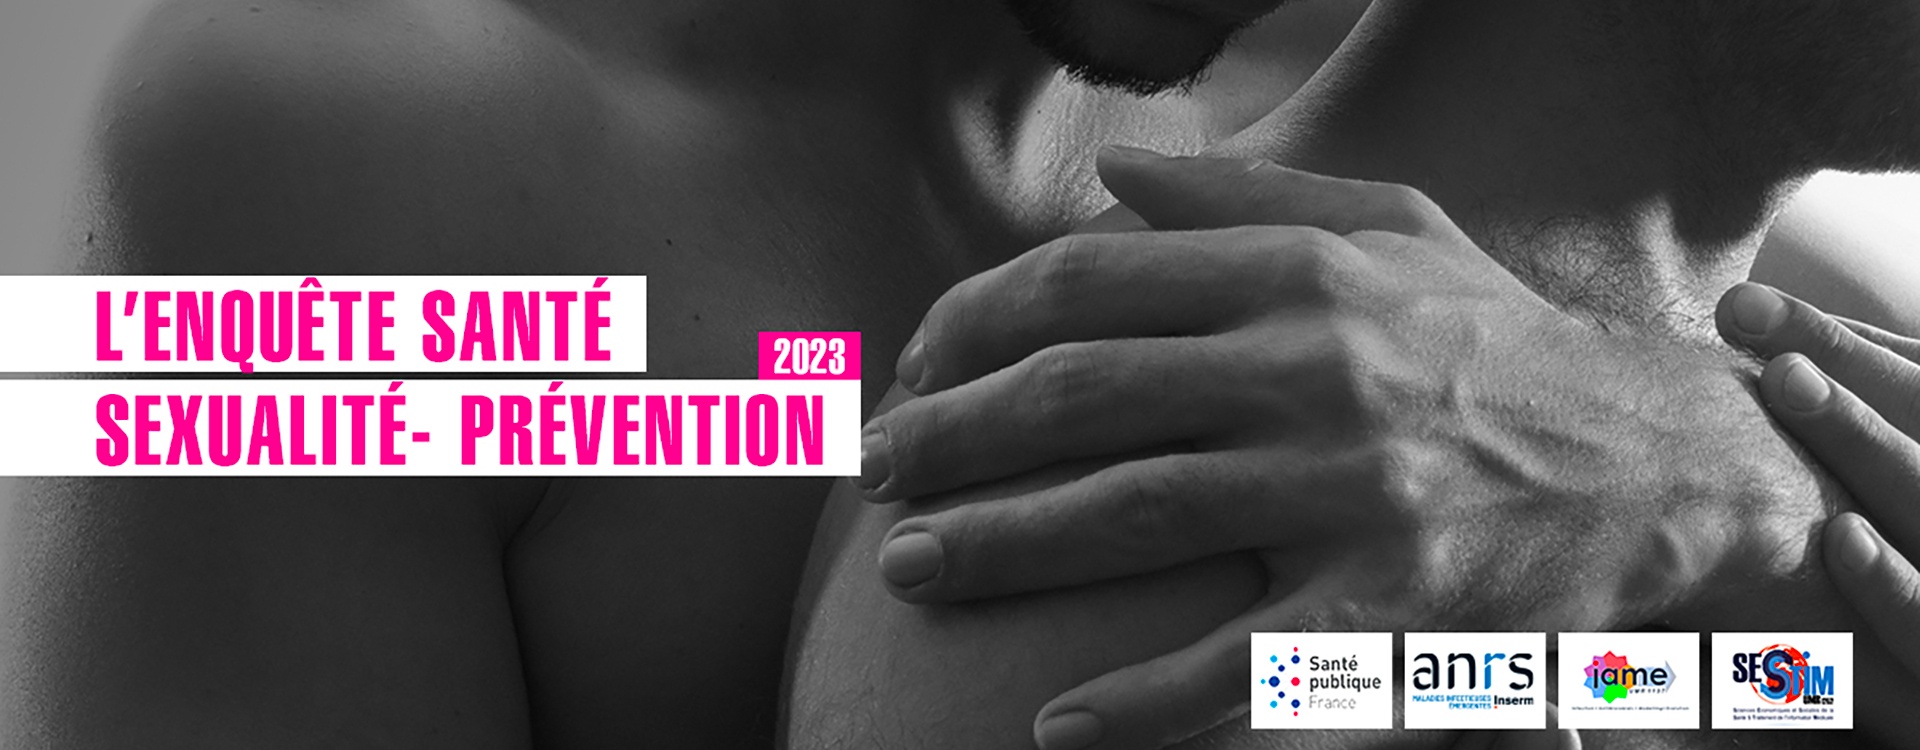 Enquête Santé, sexualité et Prévention 2023